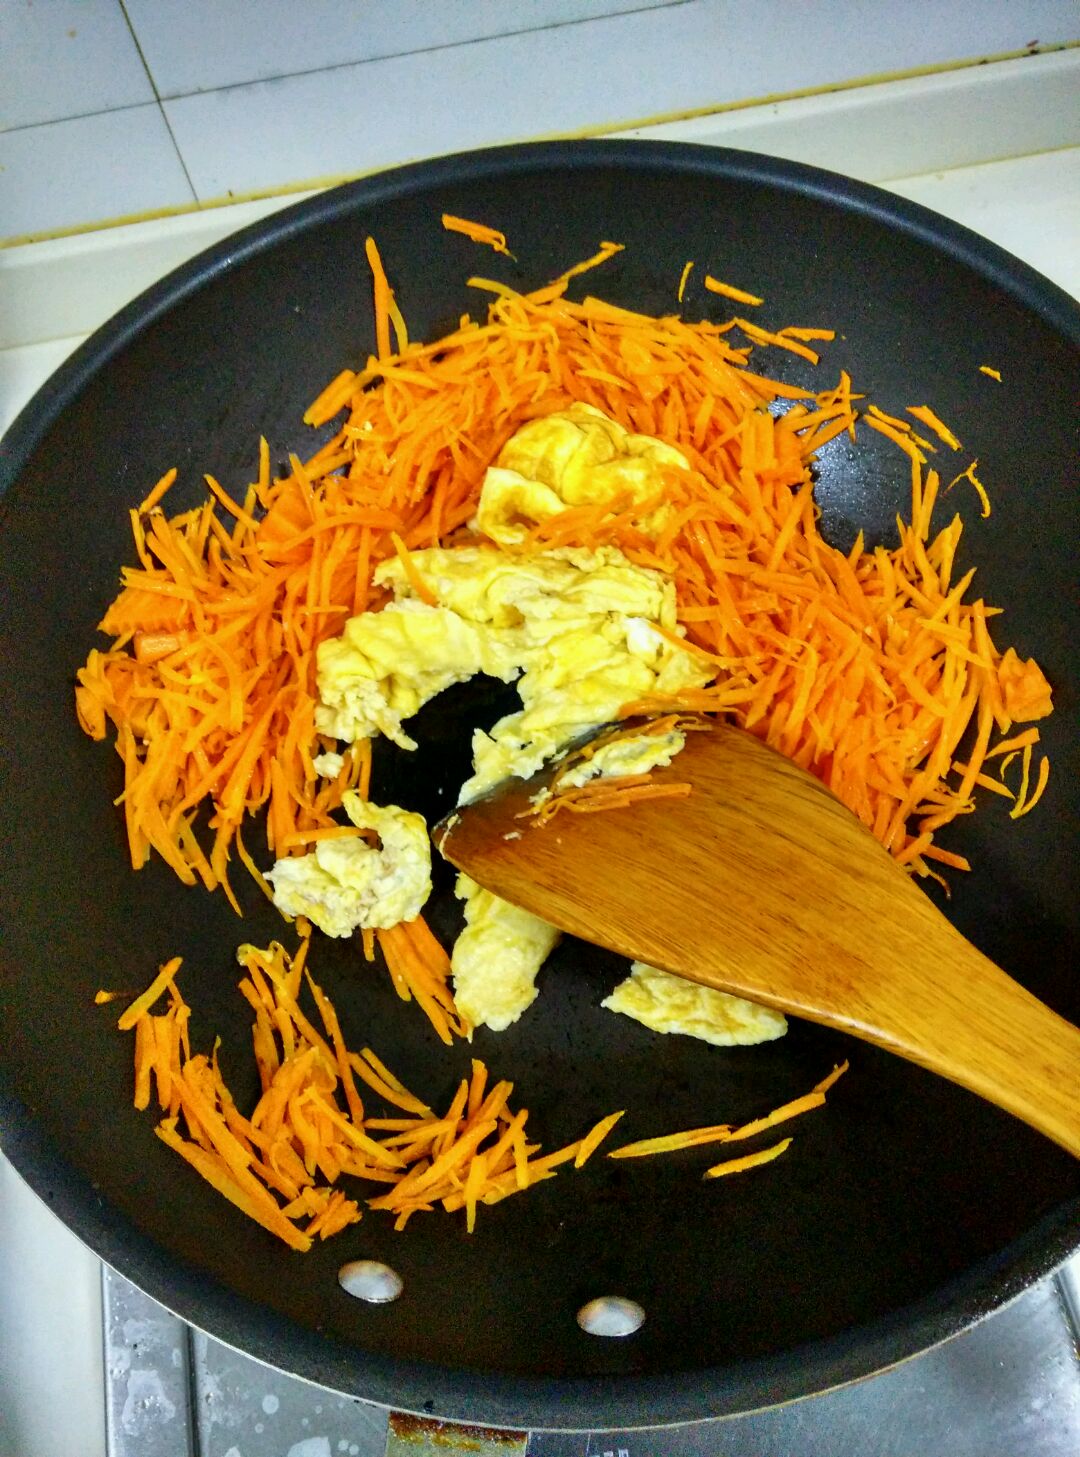 莴笋胡萝卜炒鸡蛋,莴笋胡萝卜炒鸡蛋的家常做法 - 美食杰莴笋胡萝卜炒鸡蛋做法大全